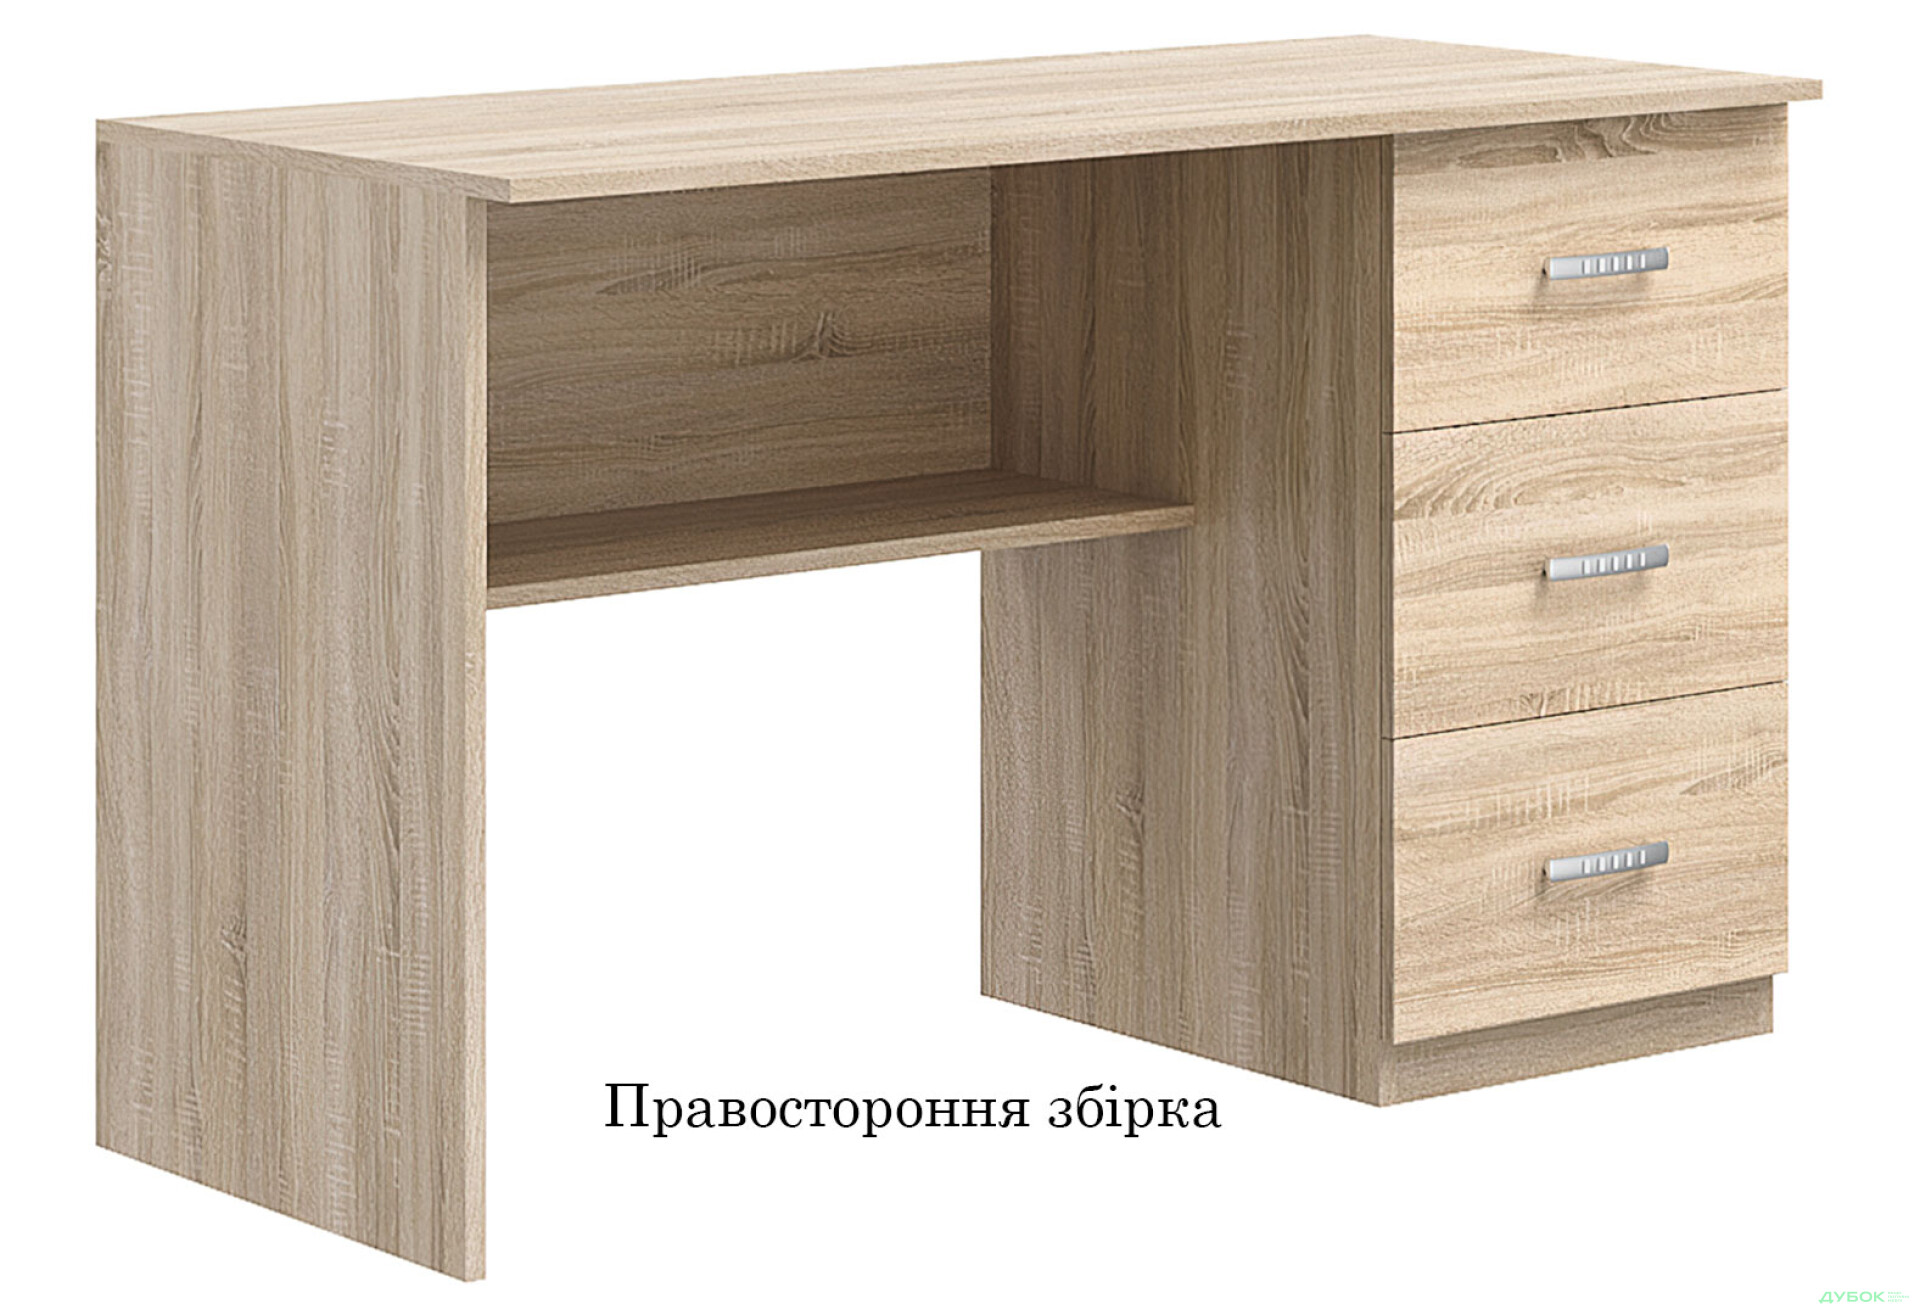 Фото 2 - Стіл письмовий Київський стандарт Е4 СМ 120x60 см з шухлядами